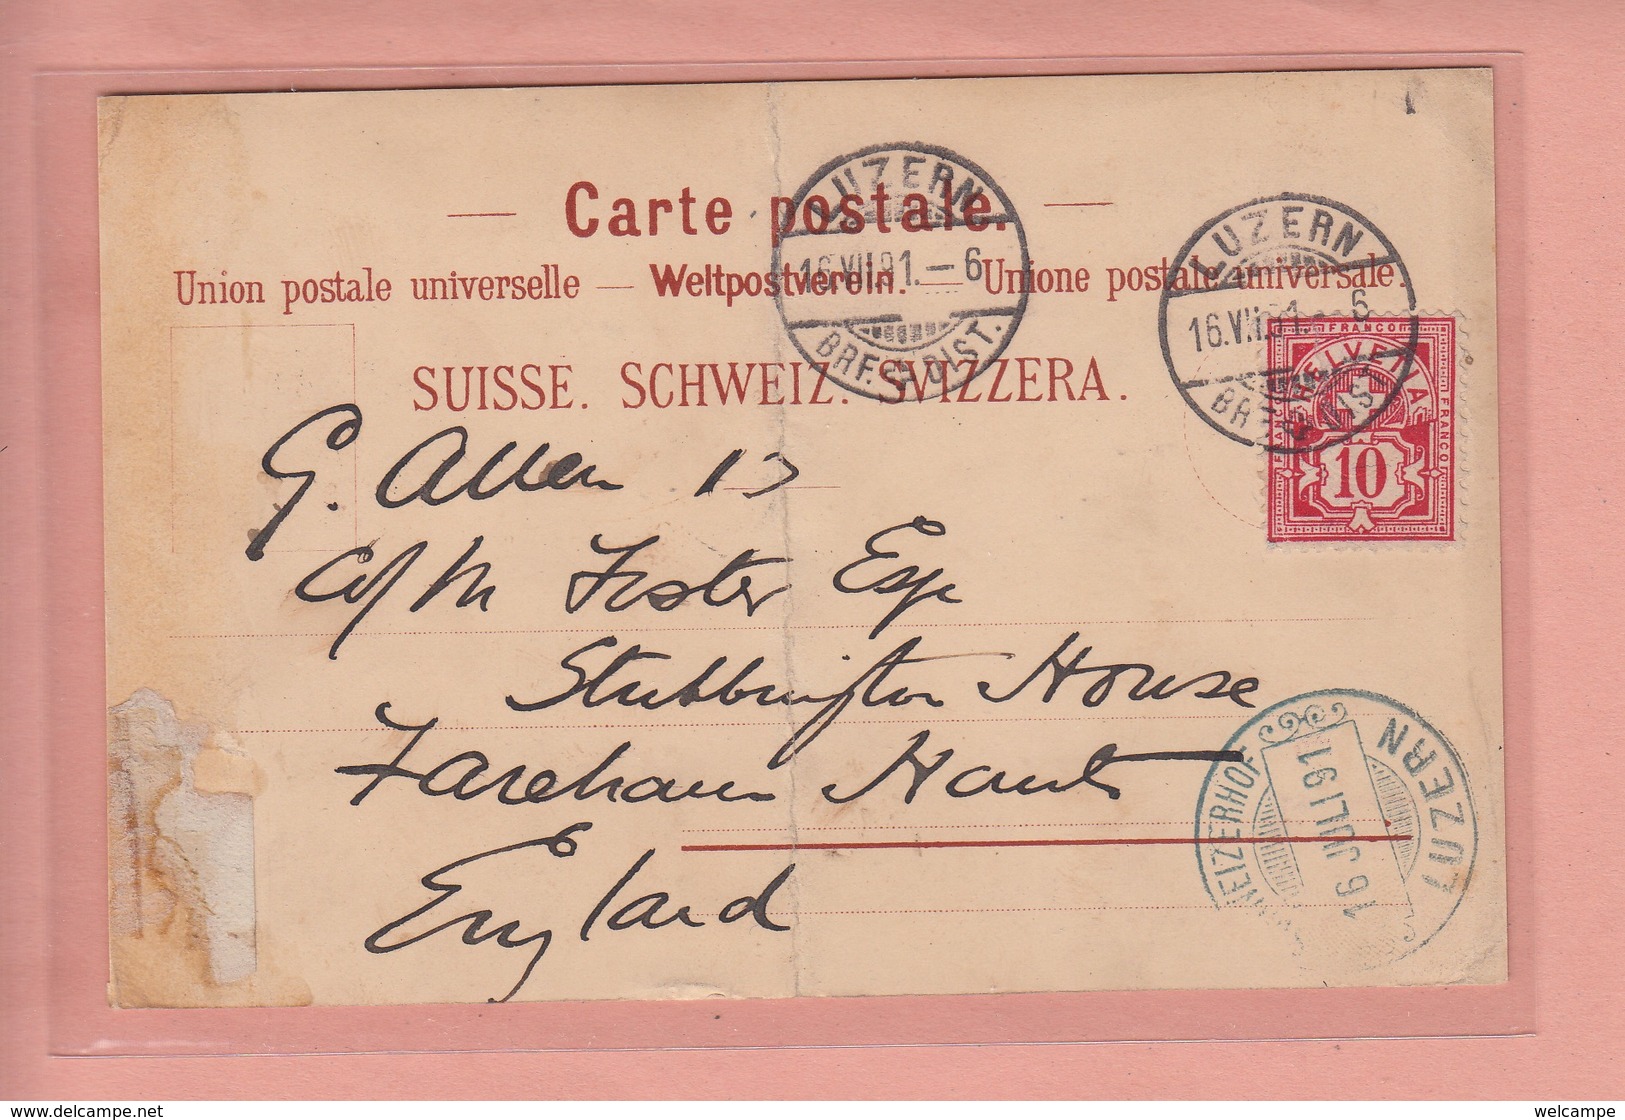 TWEE POSTKAARTEN ZWITSERLAND - SCHWEIZ - LUZERN GRAND HOTEL NATIONAL 1893 - HOTEL SCHWEIZERHOF 1891 - MIT FEHLER ----- - Luzern